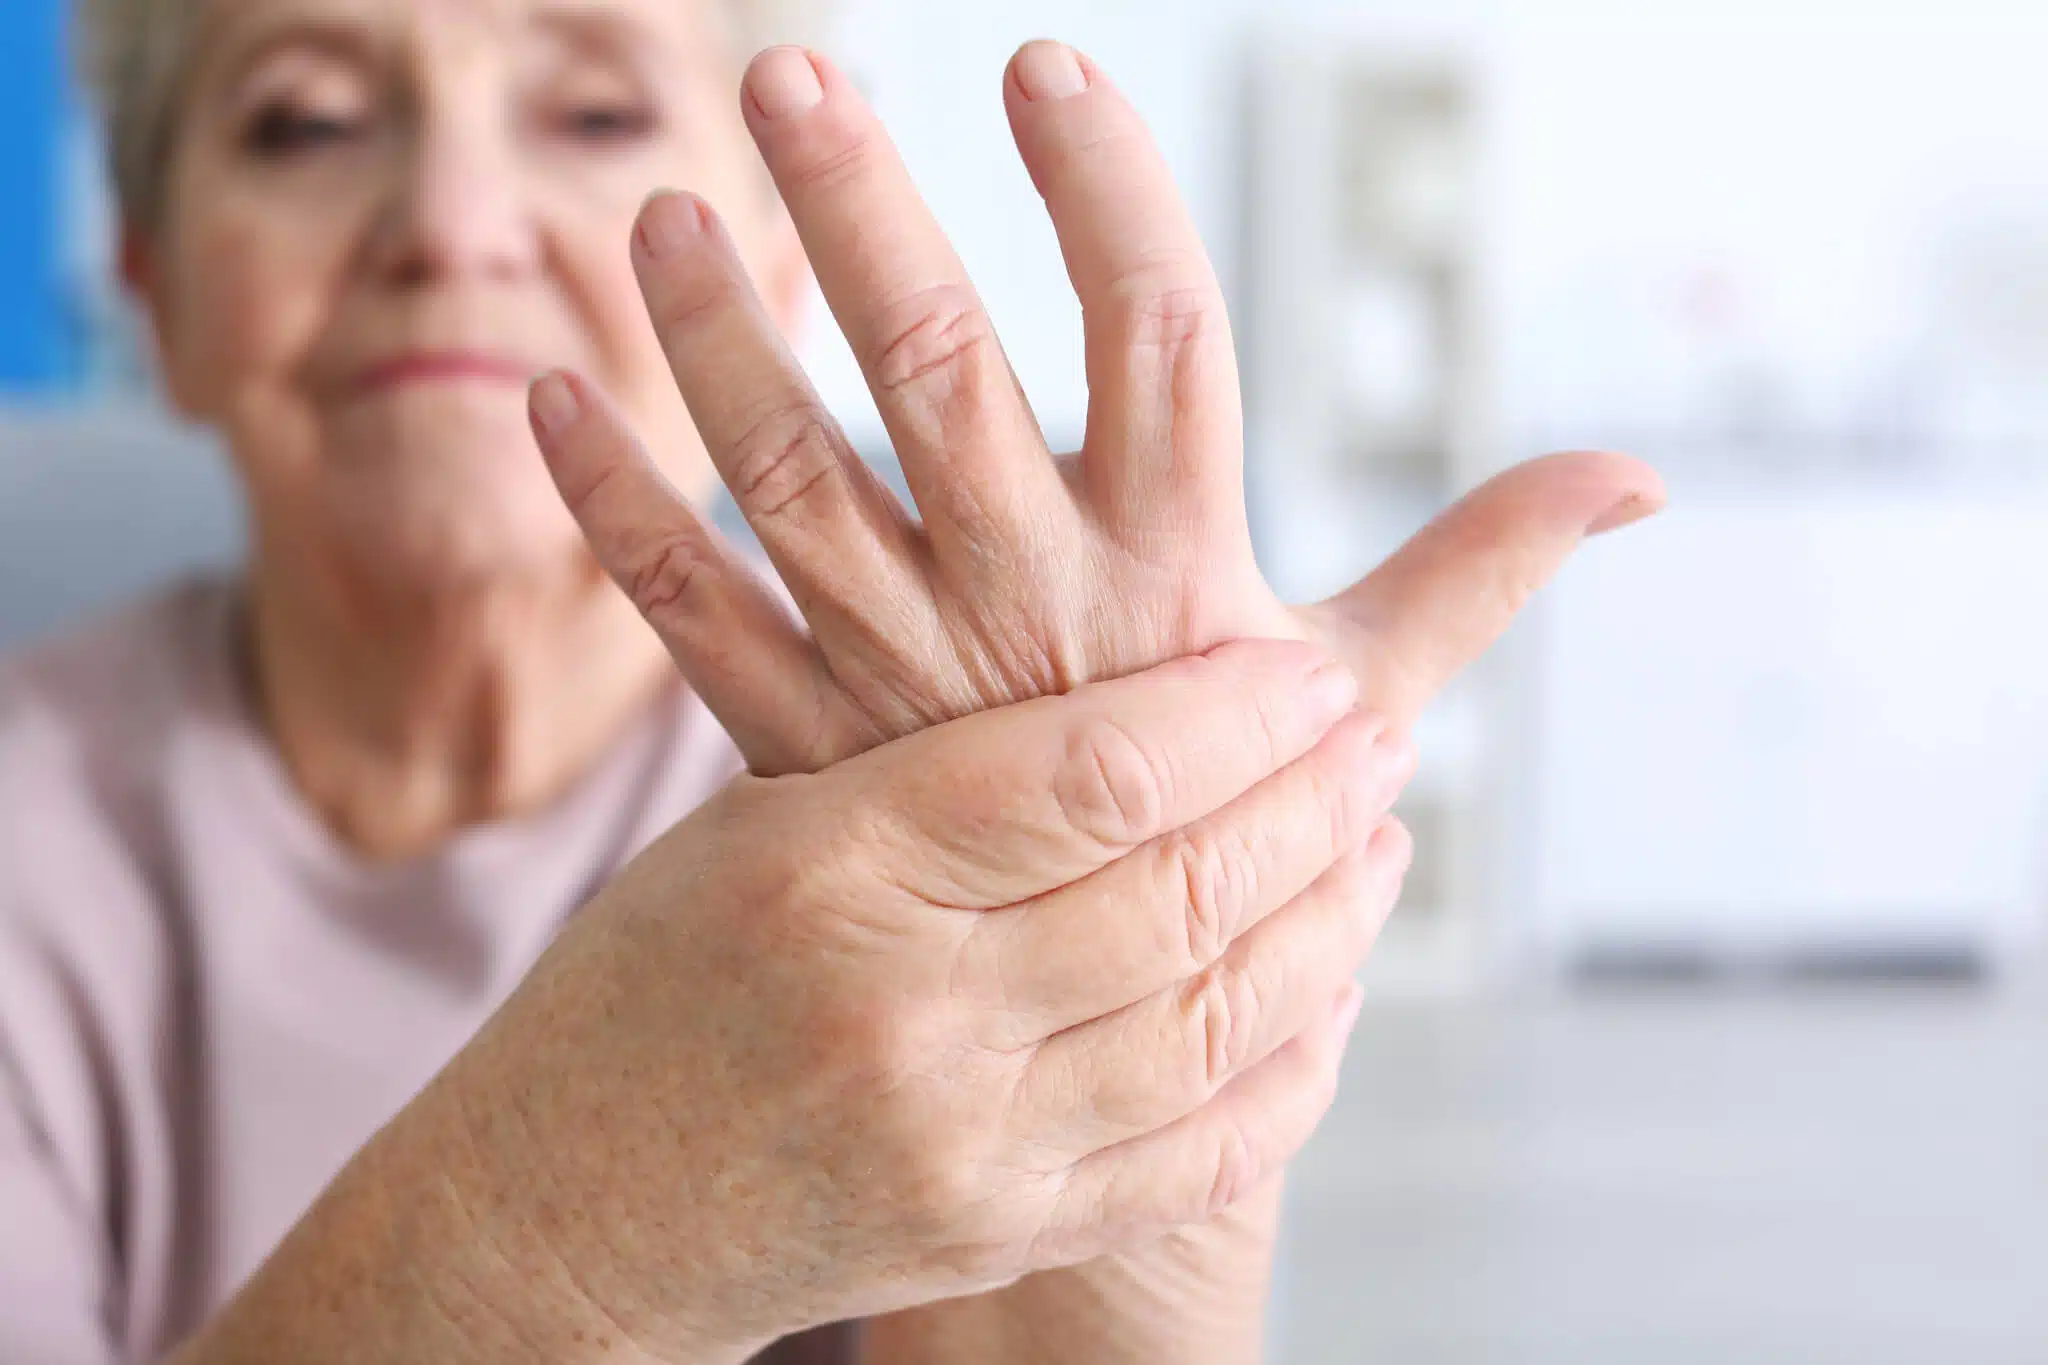 https://dunbarmedical.com/wp-content/uploads/2017/05/Orthopedic-Brace-for-Arthritis-1.jpg.webp